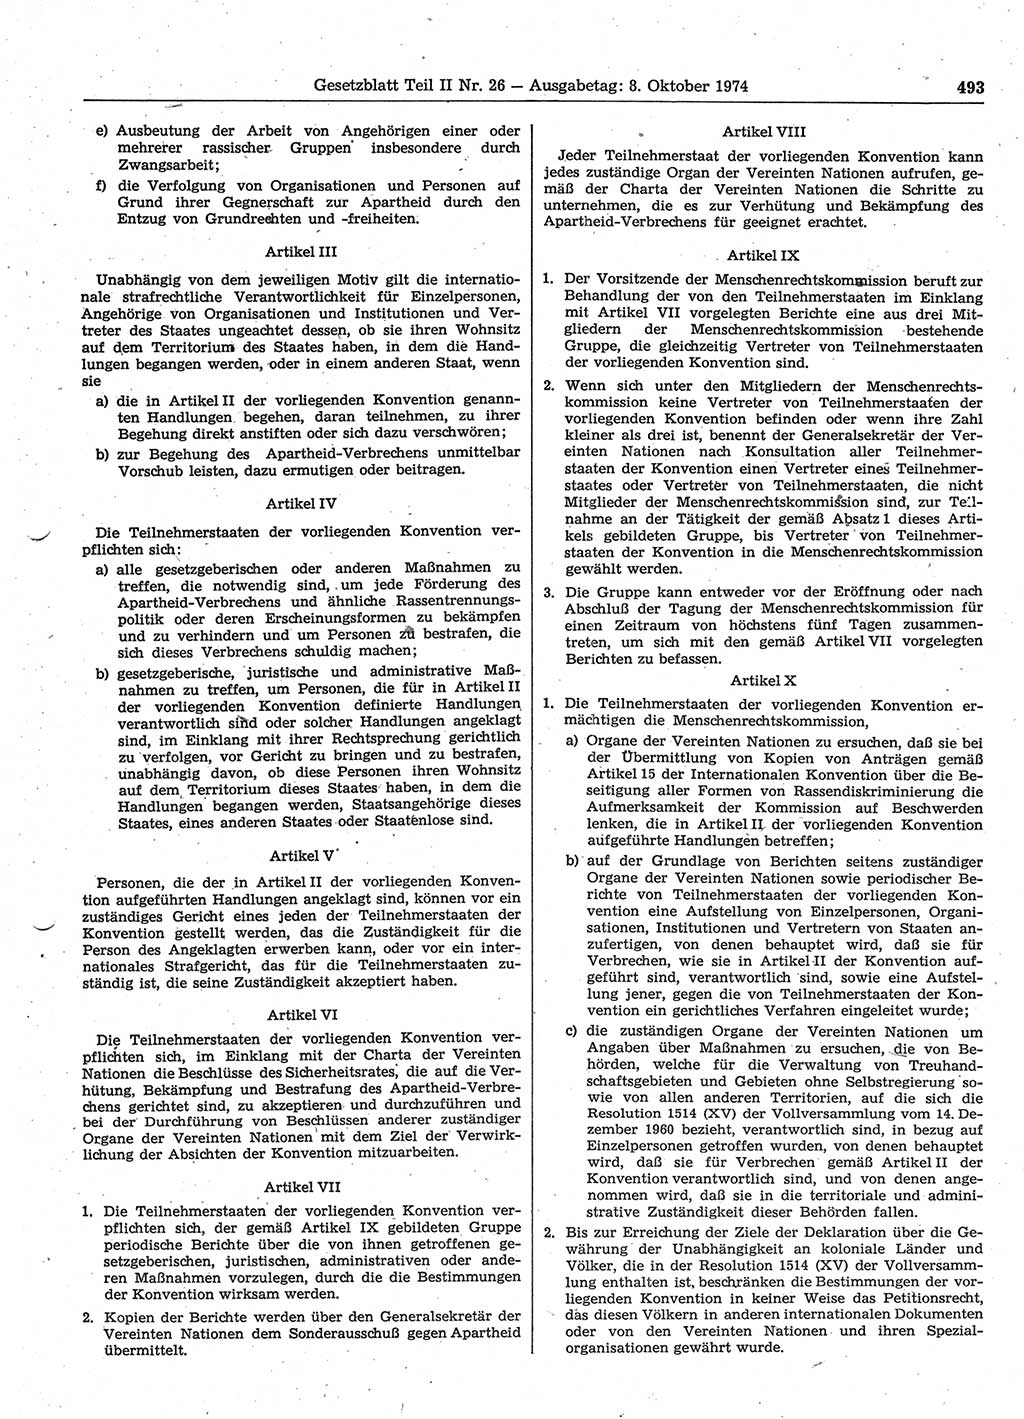 Gesetzblatt (GBl.) der Deutschen Demokratischen Republik (DDR) Teil ⅠⅠ 1974, Seite 493 (GBl. DDR ⅠⅠ 1974, S. 493)